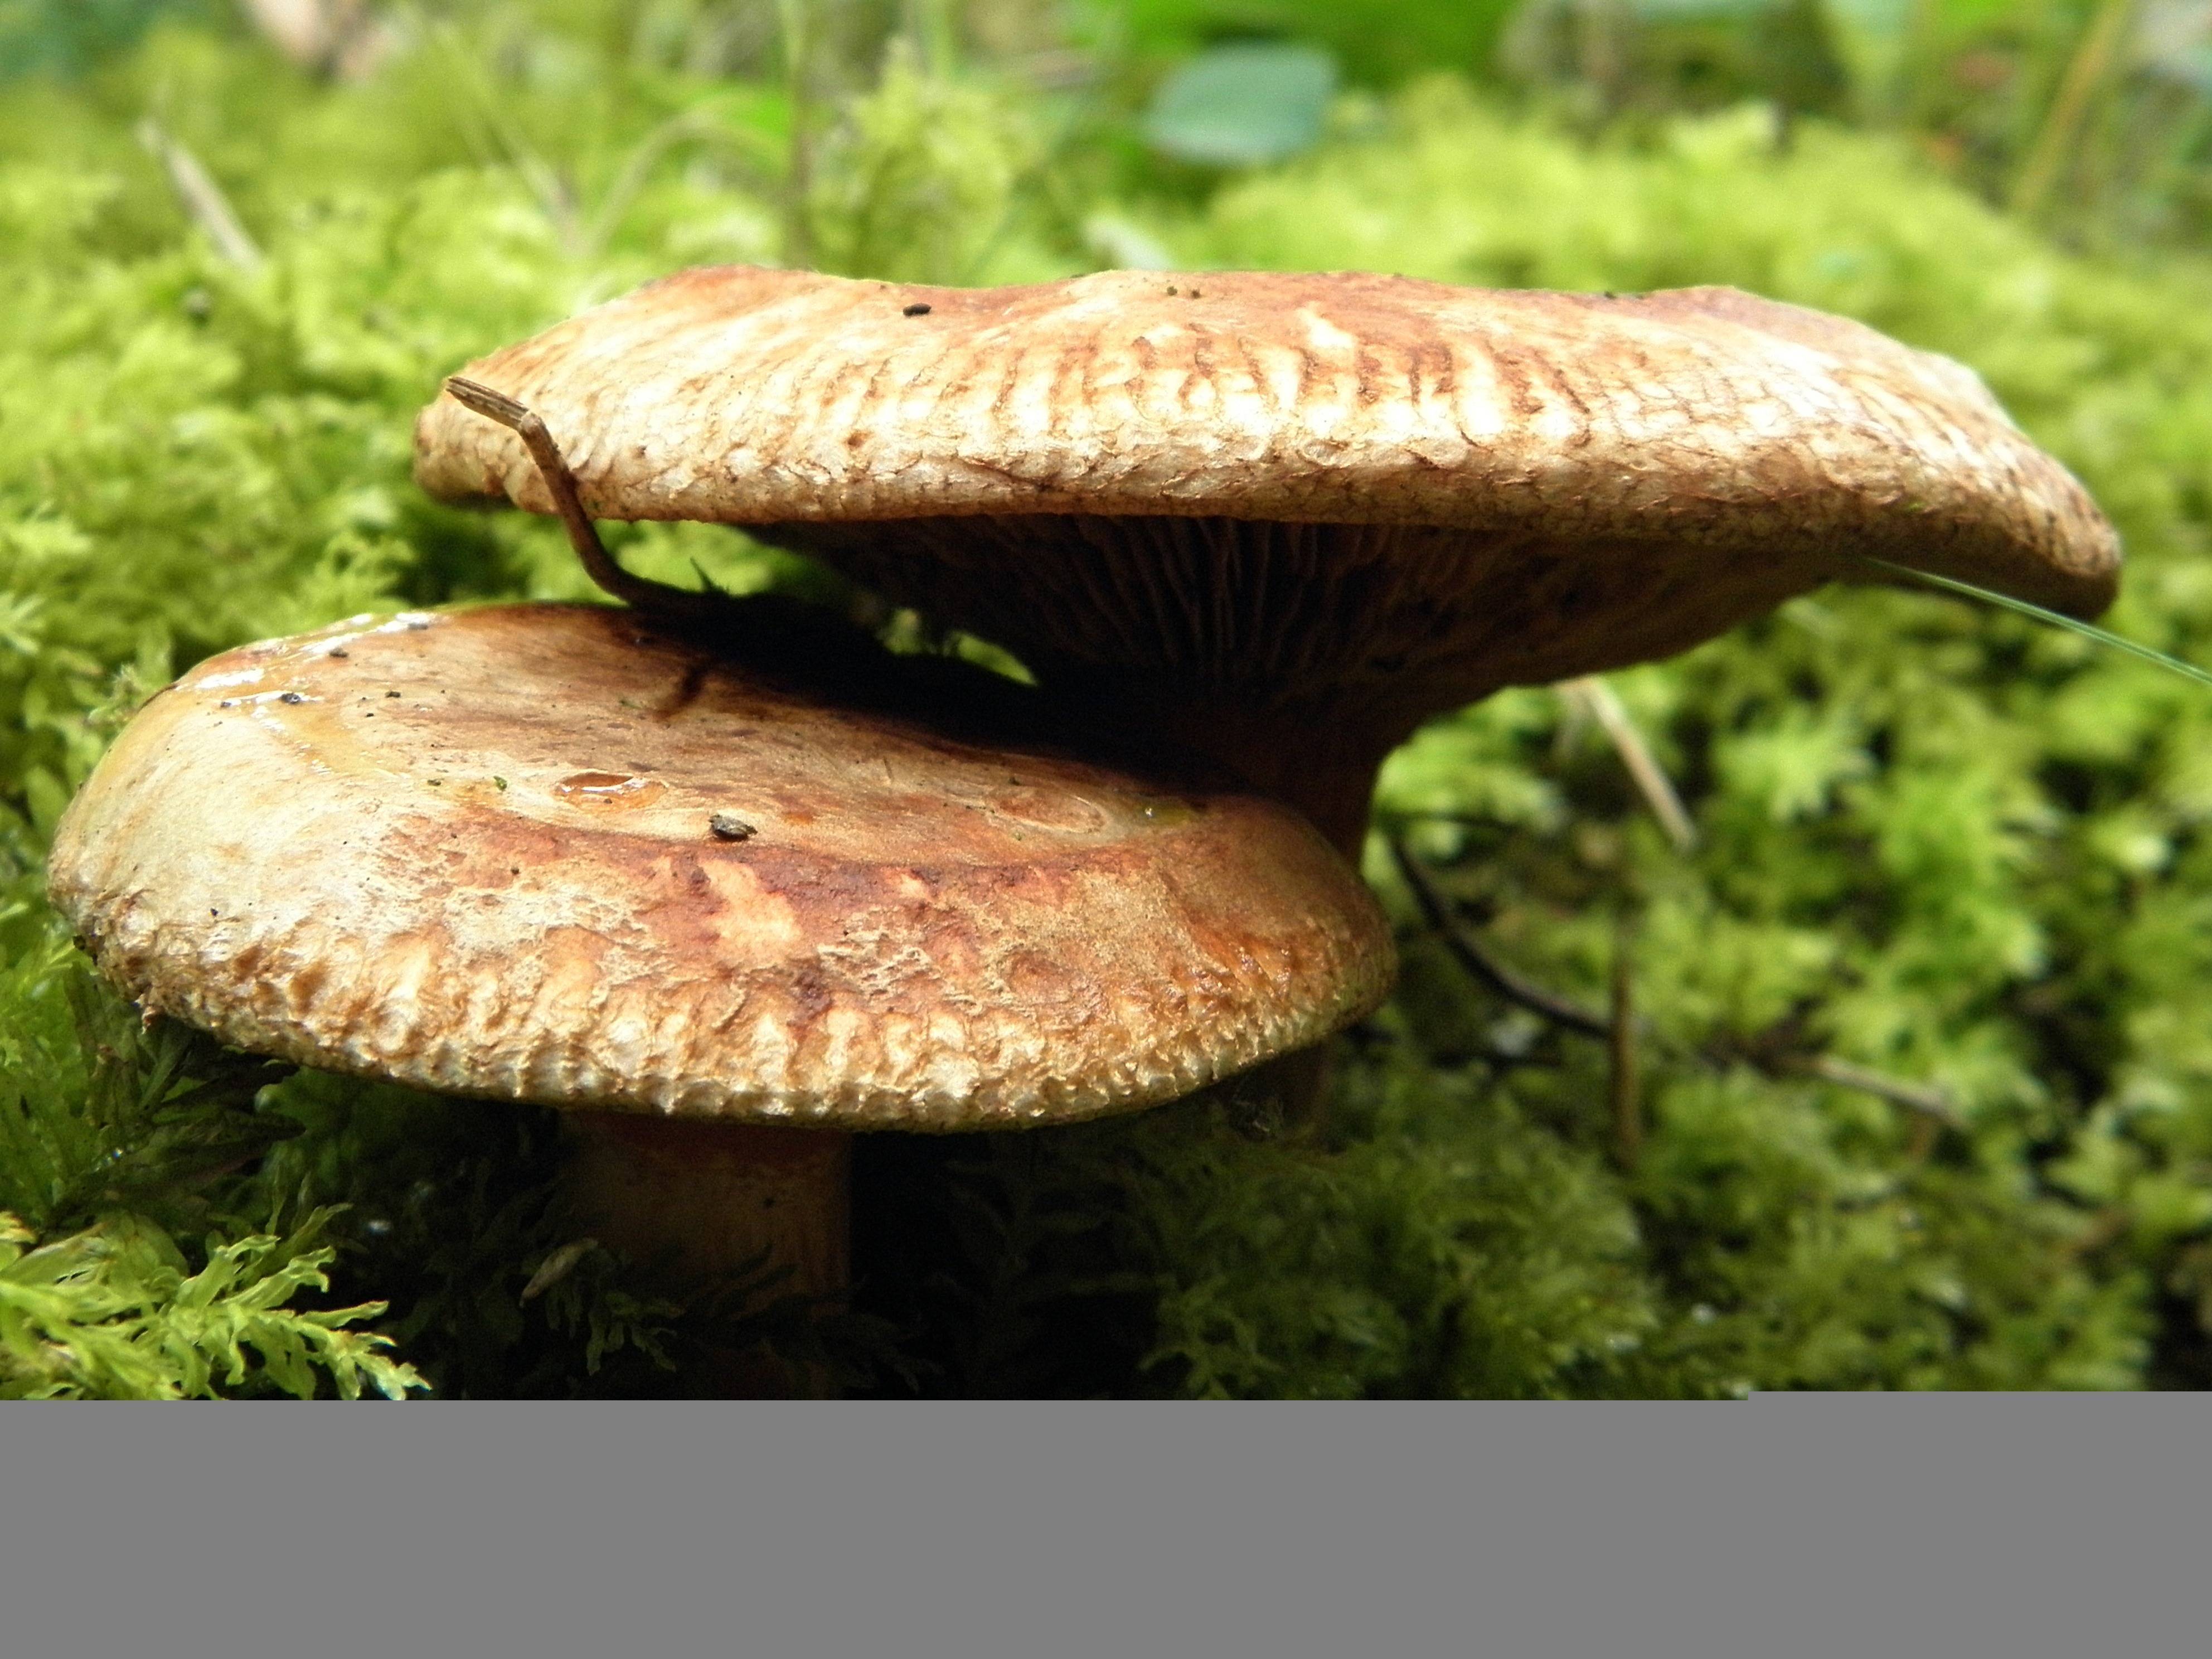 Все виды съедобных грибов с фото